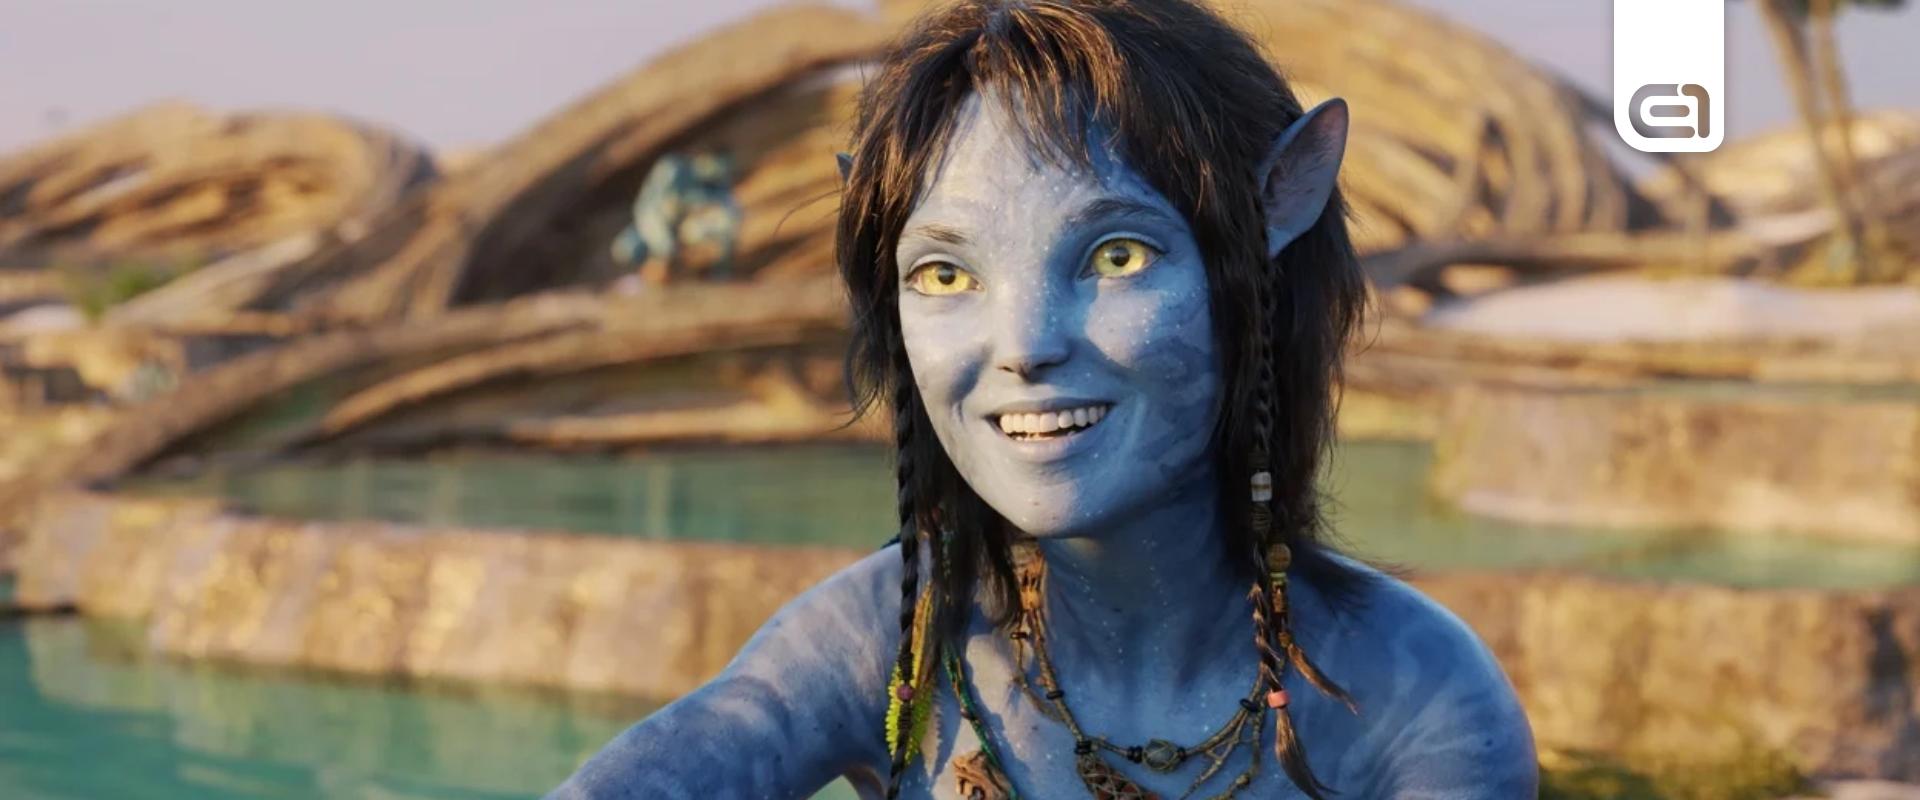 Az Avatart is beelőzte az Avatar 2 a magyar mozikban